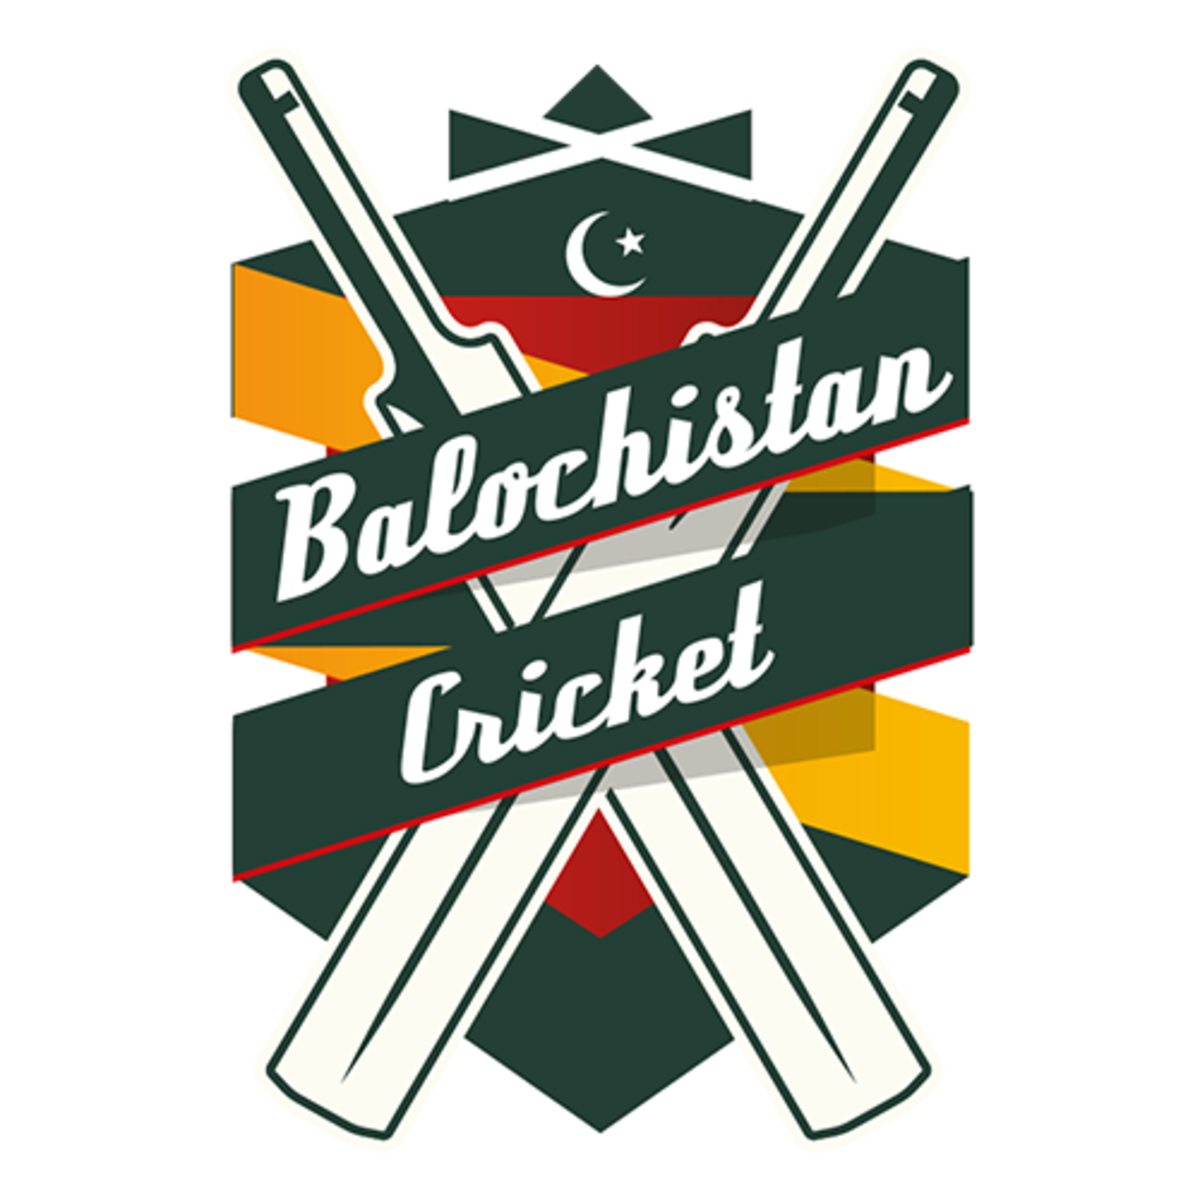 Balochistan team logo | ESPNcricinfo.com